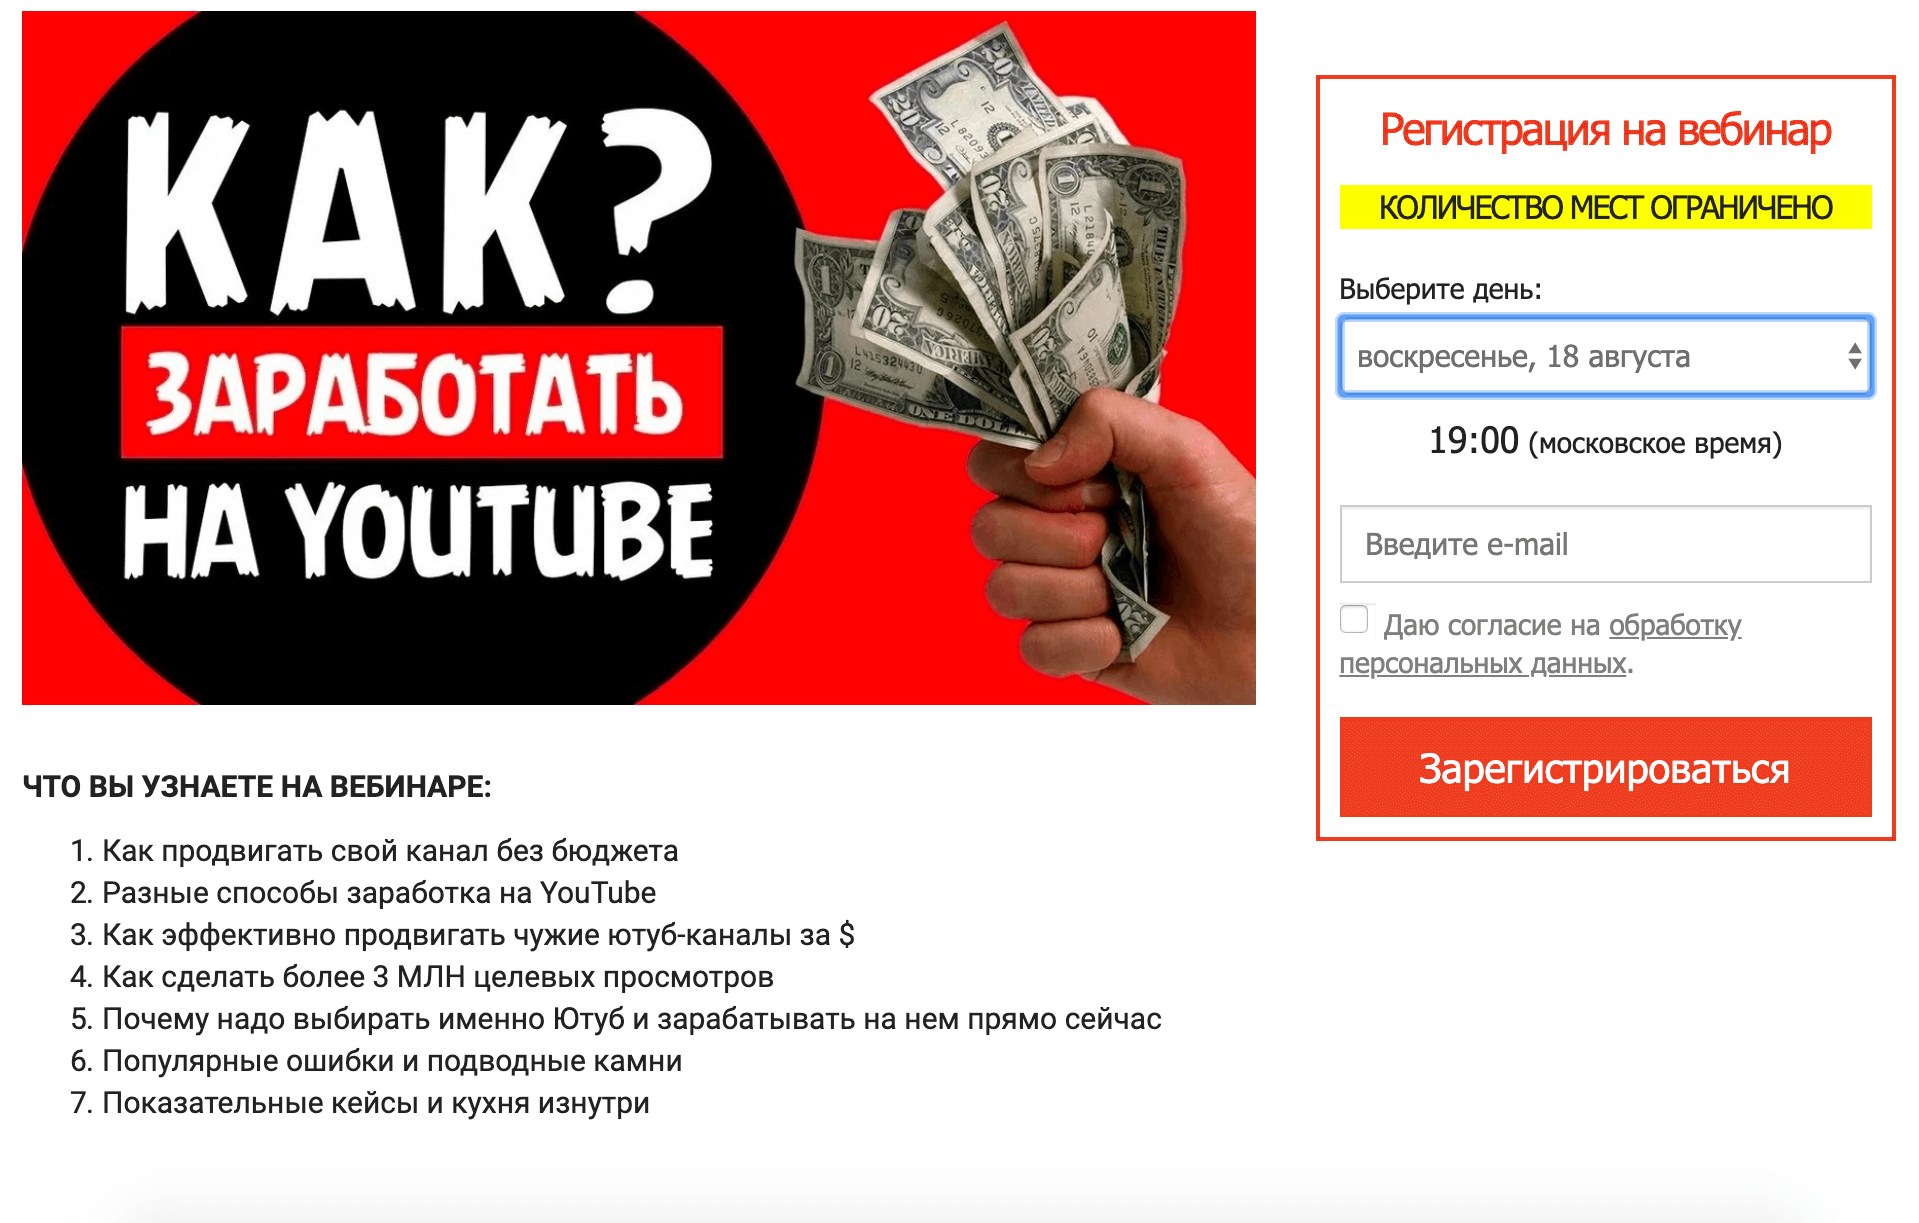 Зарабатывать по 300 000 рублей в месяц на youtube? это легко!